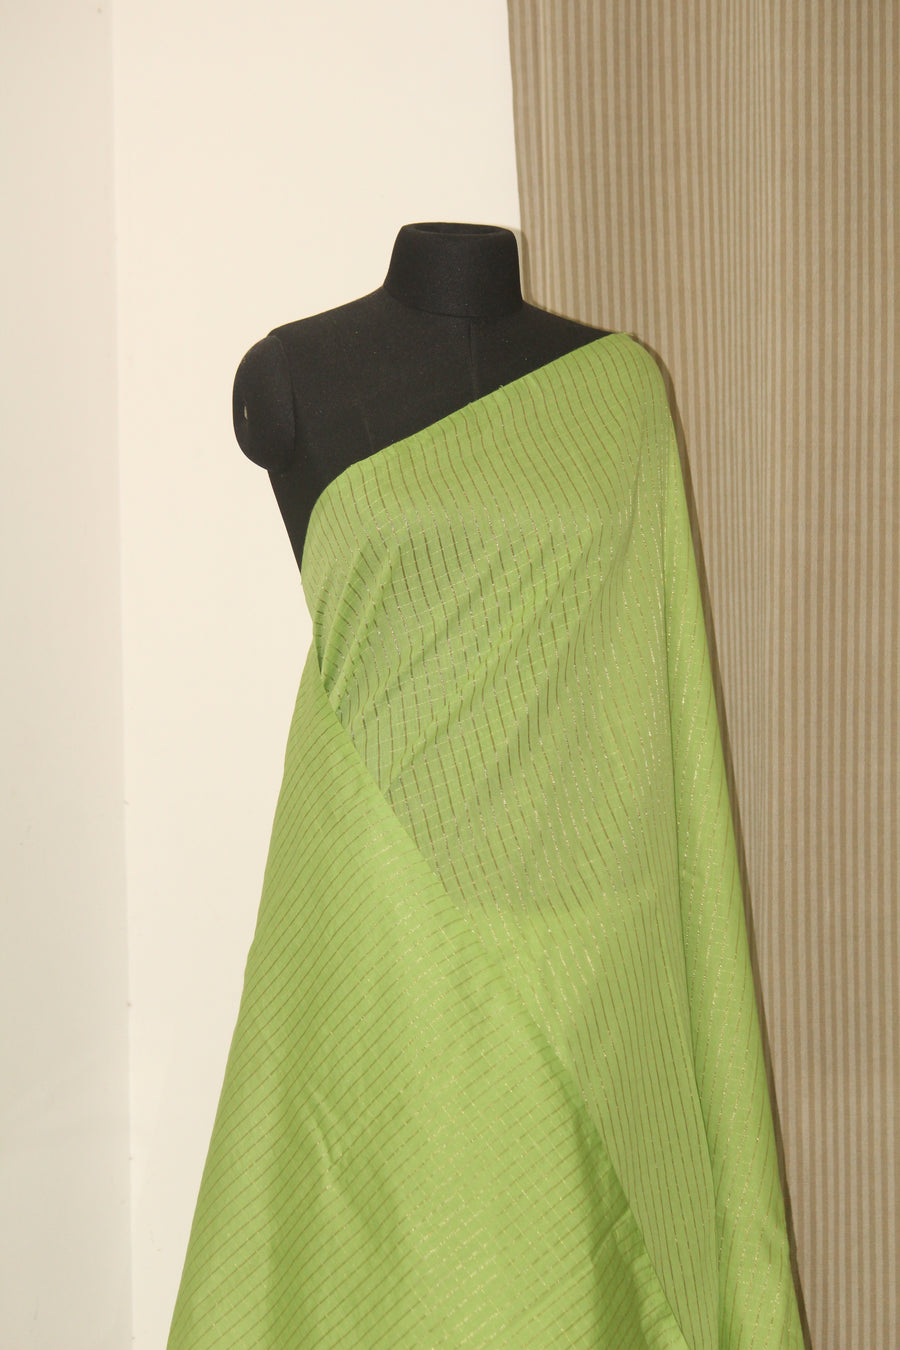 Silk cotton zari checks saree